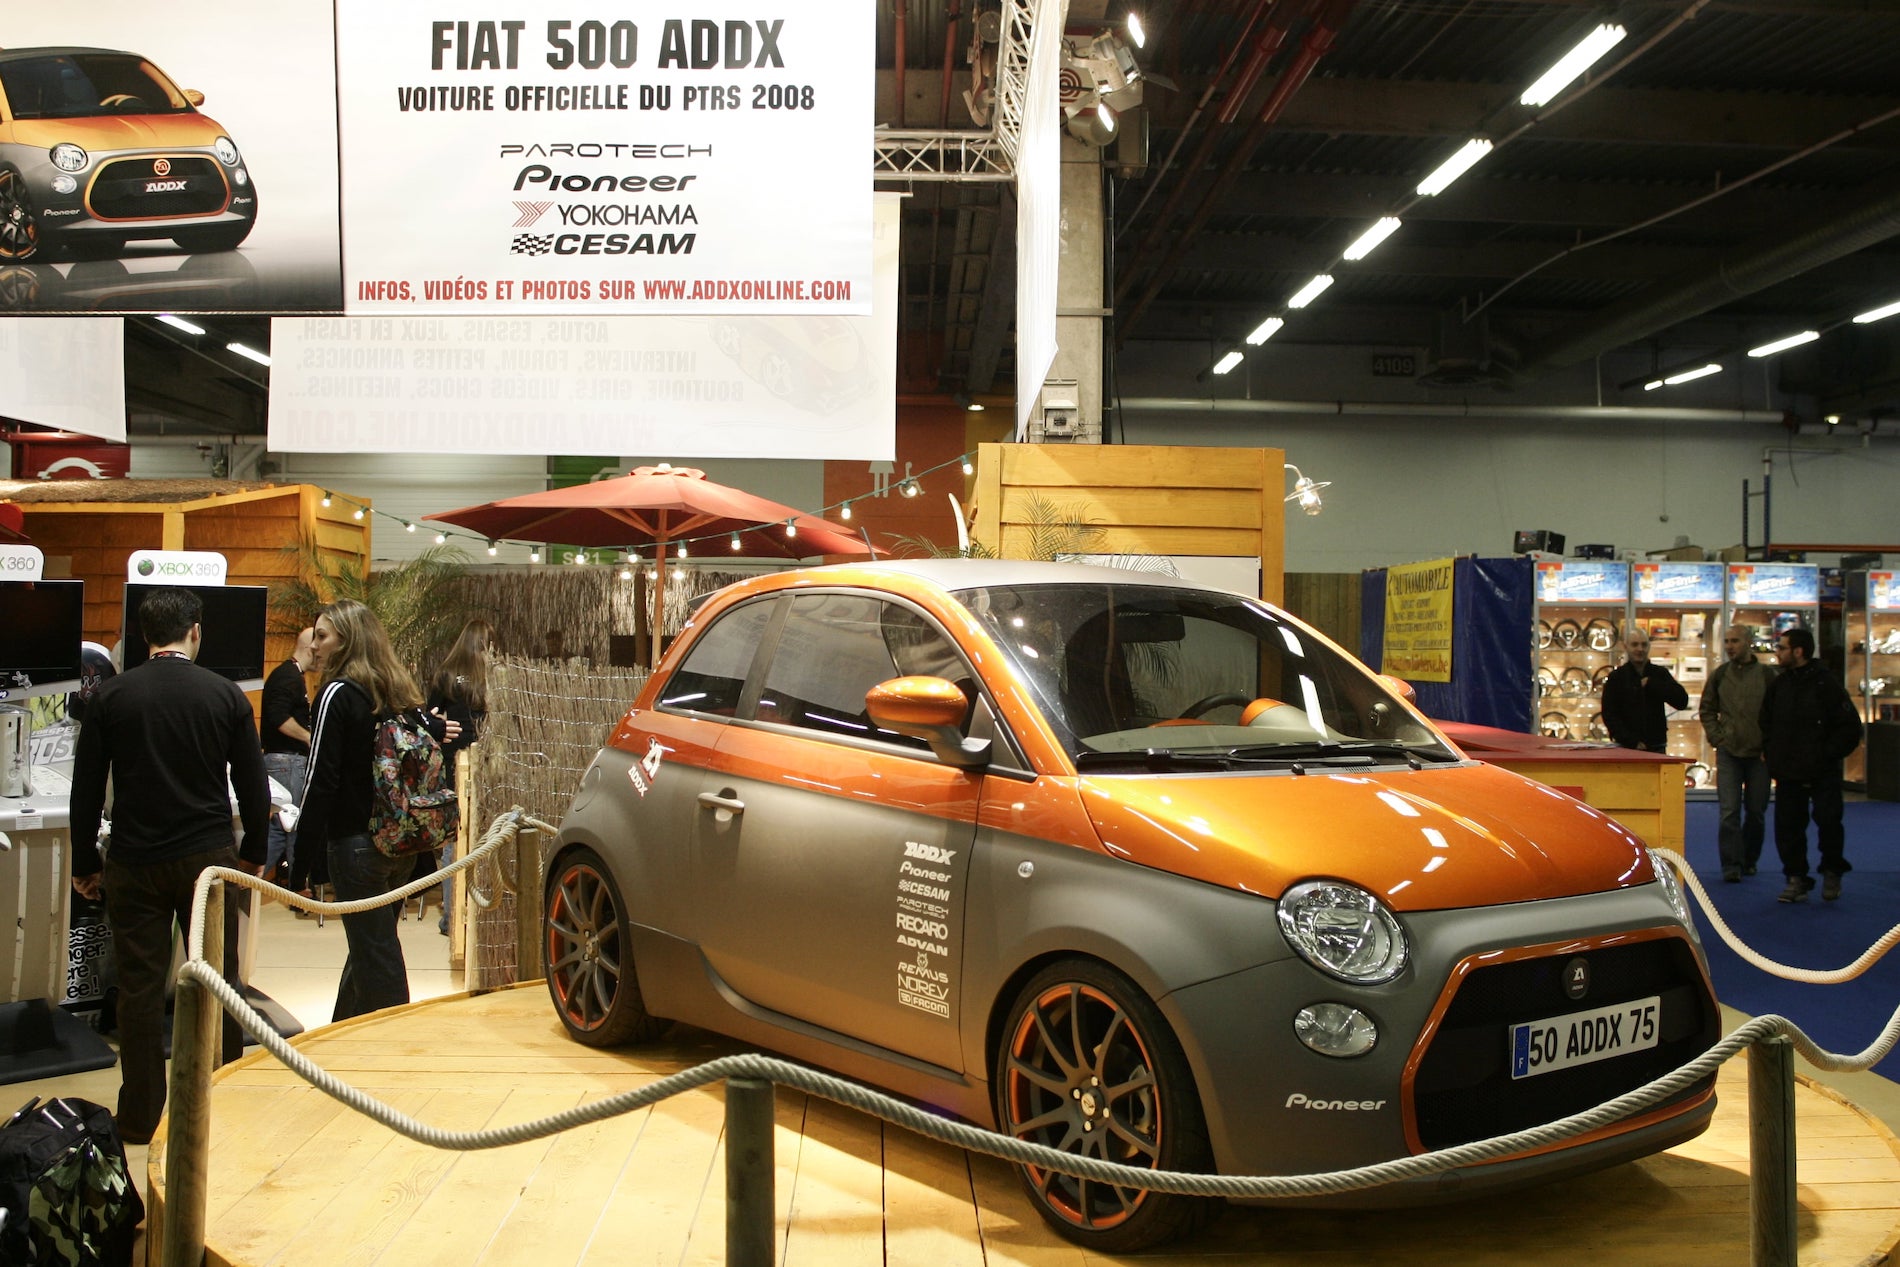 la Fiat 500 Edition ADDX de Parotech au Paris Tuning Show